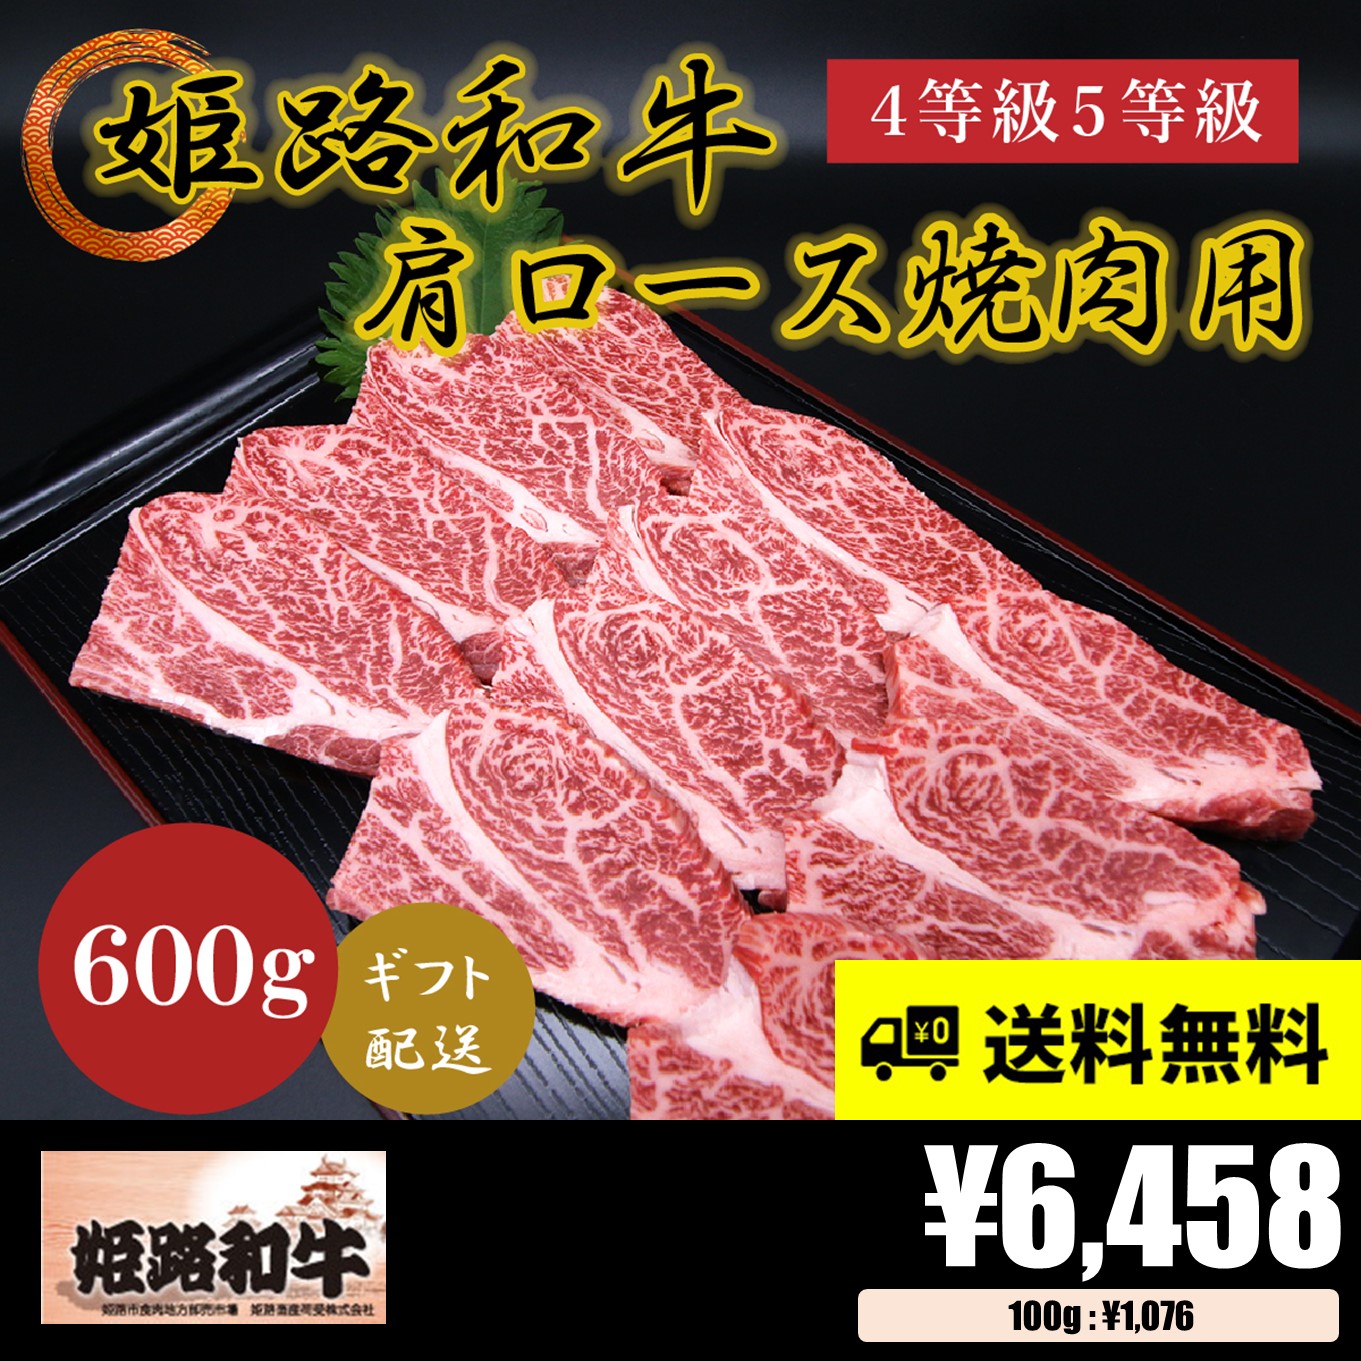 【お肉 ギフト】黒毛和牛 姫路和牛 4等級5等級 肩ロース 焼肉用600g①